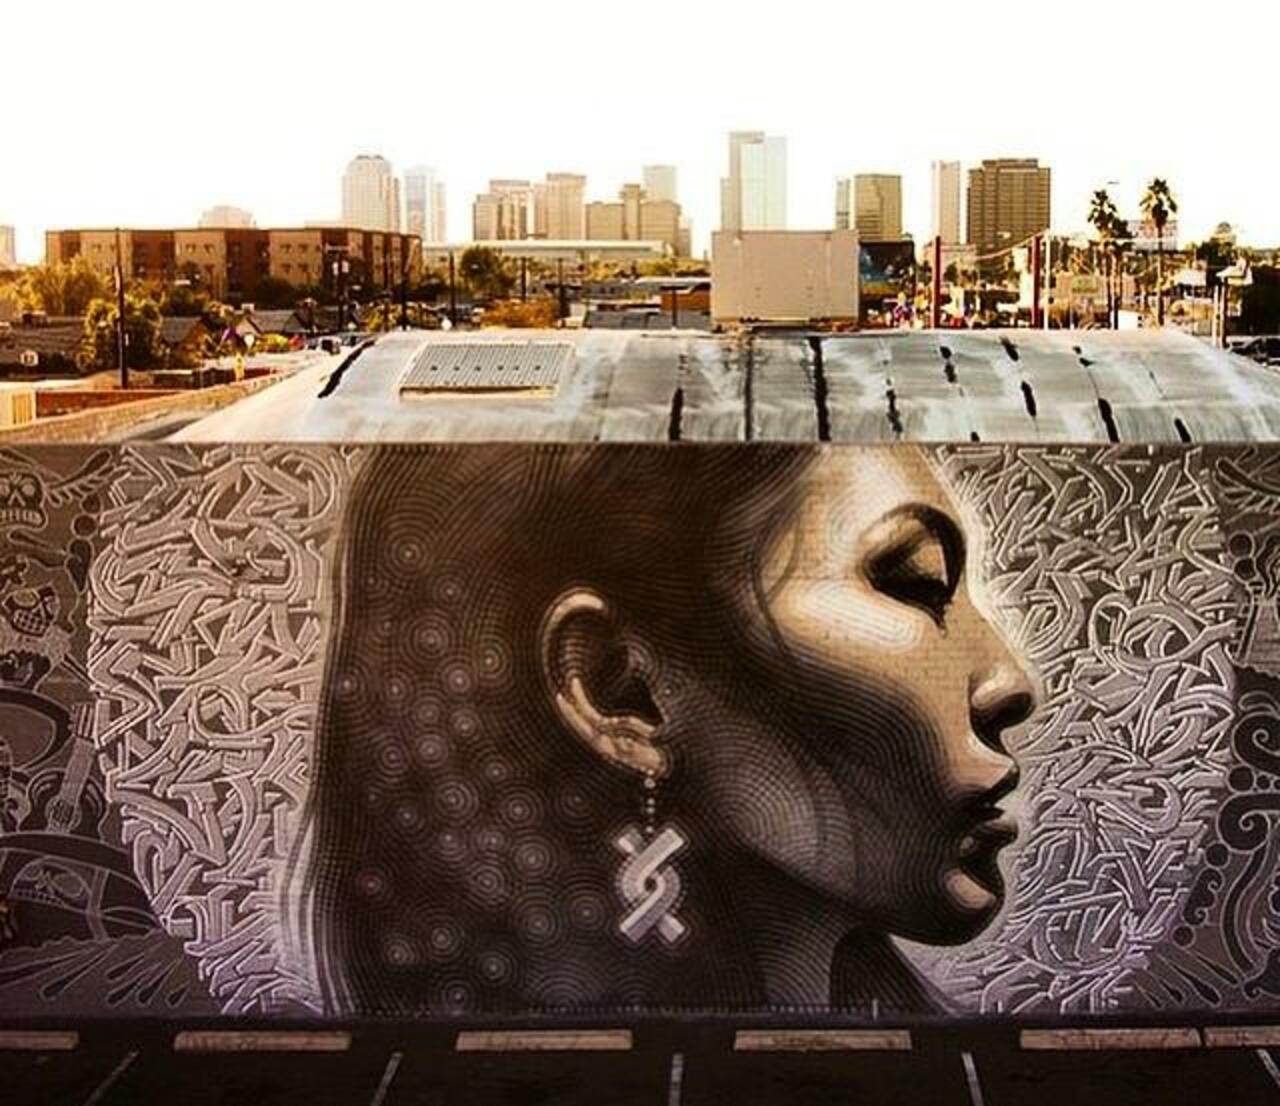 "@5putnik1: Urban Headspace • @GoogleStreetArt #ElMac #Phoenix #art #mural #funky  #graffiti #streetart http://t.co/dwYsTttjdb" #Crisp #Art